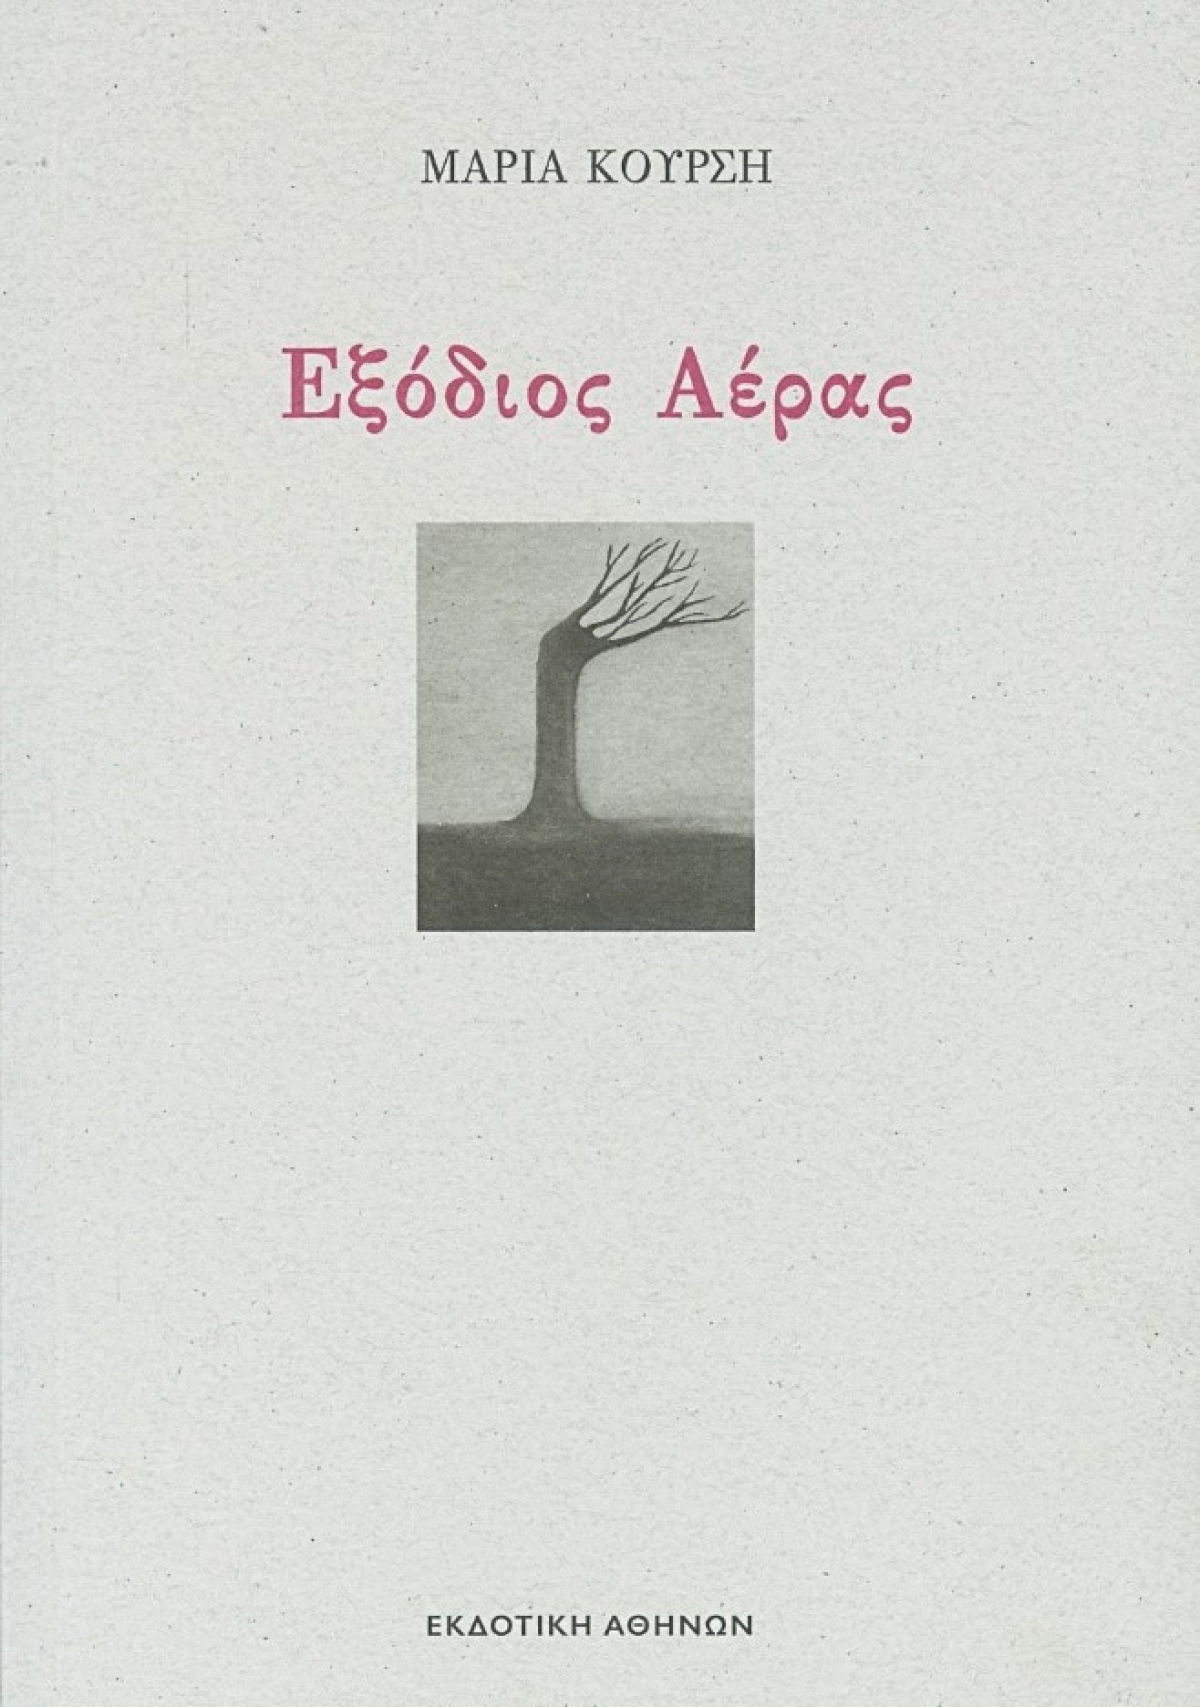 Κυκλοφόρησε από την Εκδοτική Αθηνών το νέο βιβλίο της Μαρίας Κούρση &quot;Εξόδιος Αέρας&quot;